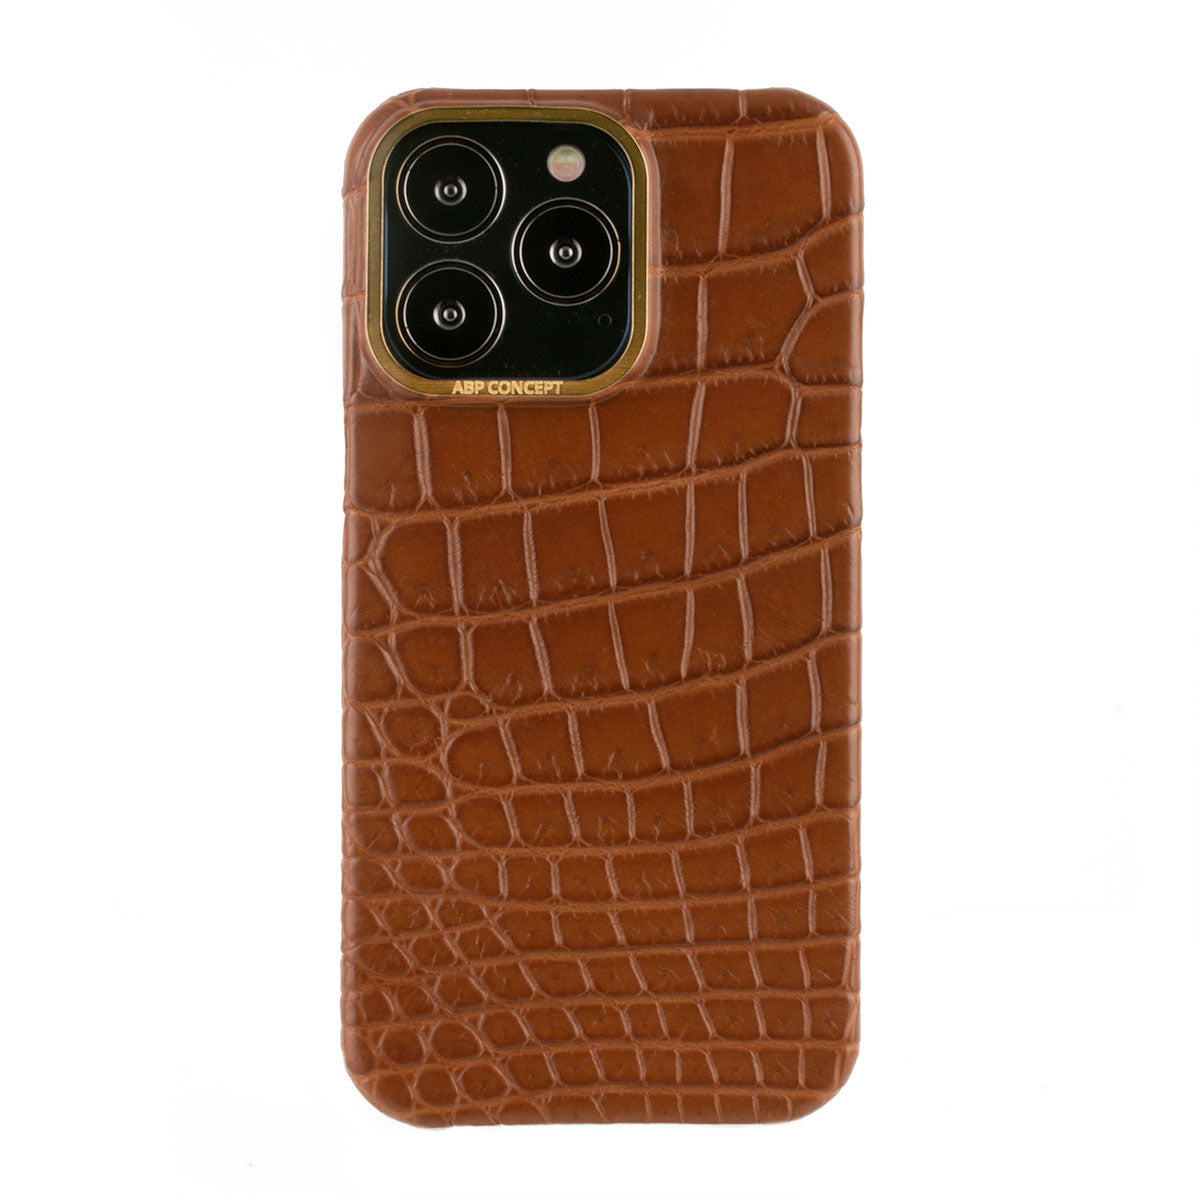 Hommage à l'Expo 2020 Dubai - Coque cuir pour iPhone 13 et 12 ( Pro / Max ) - Alligator et buffle marron